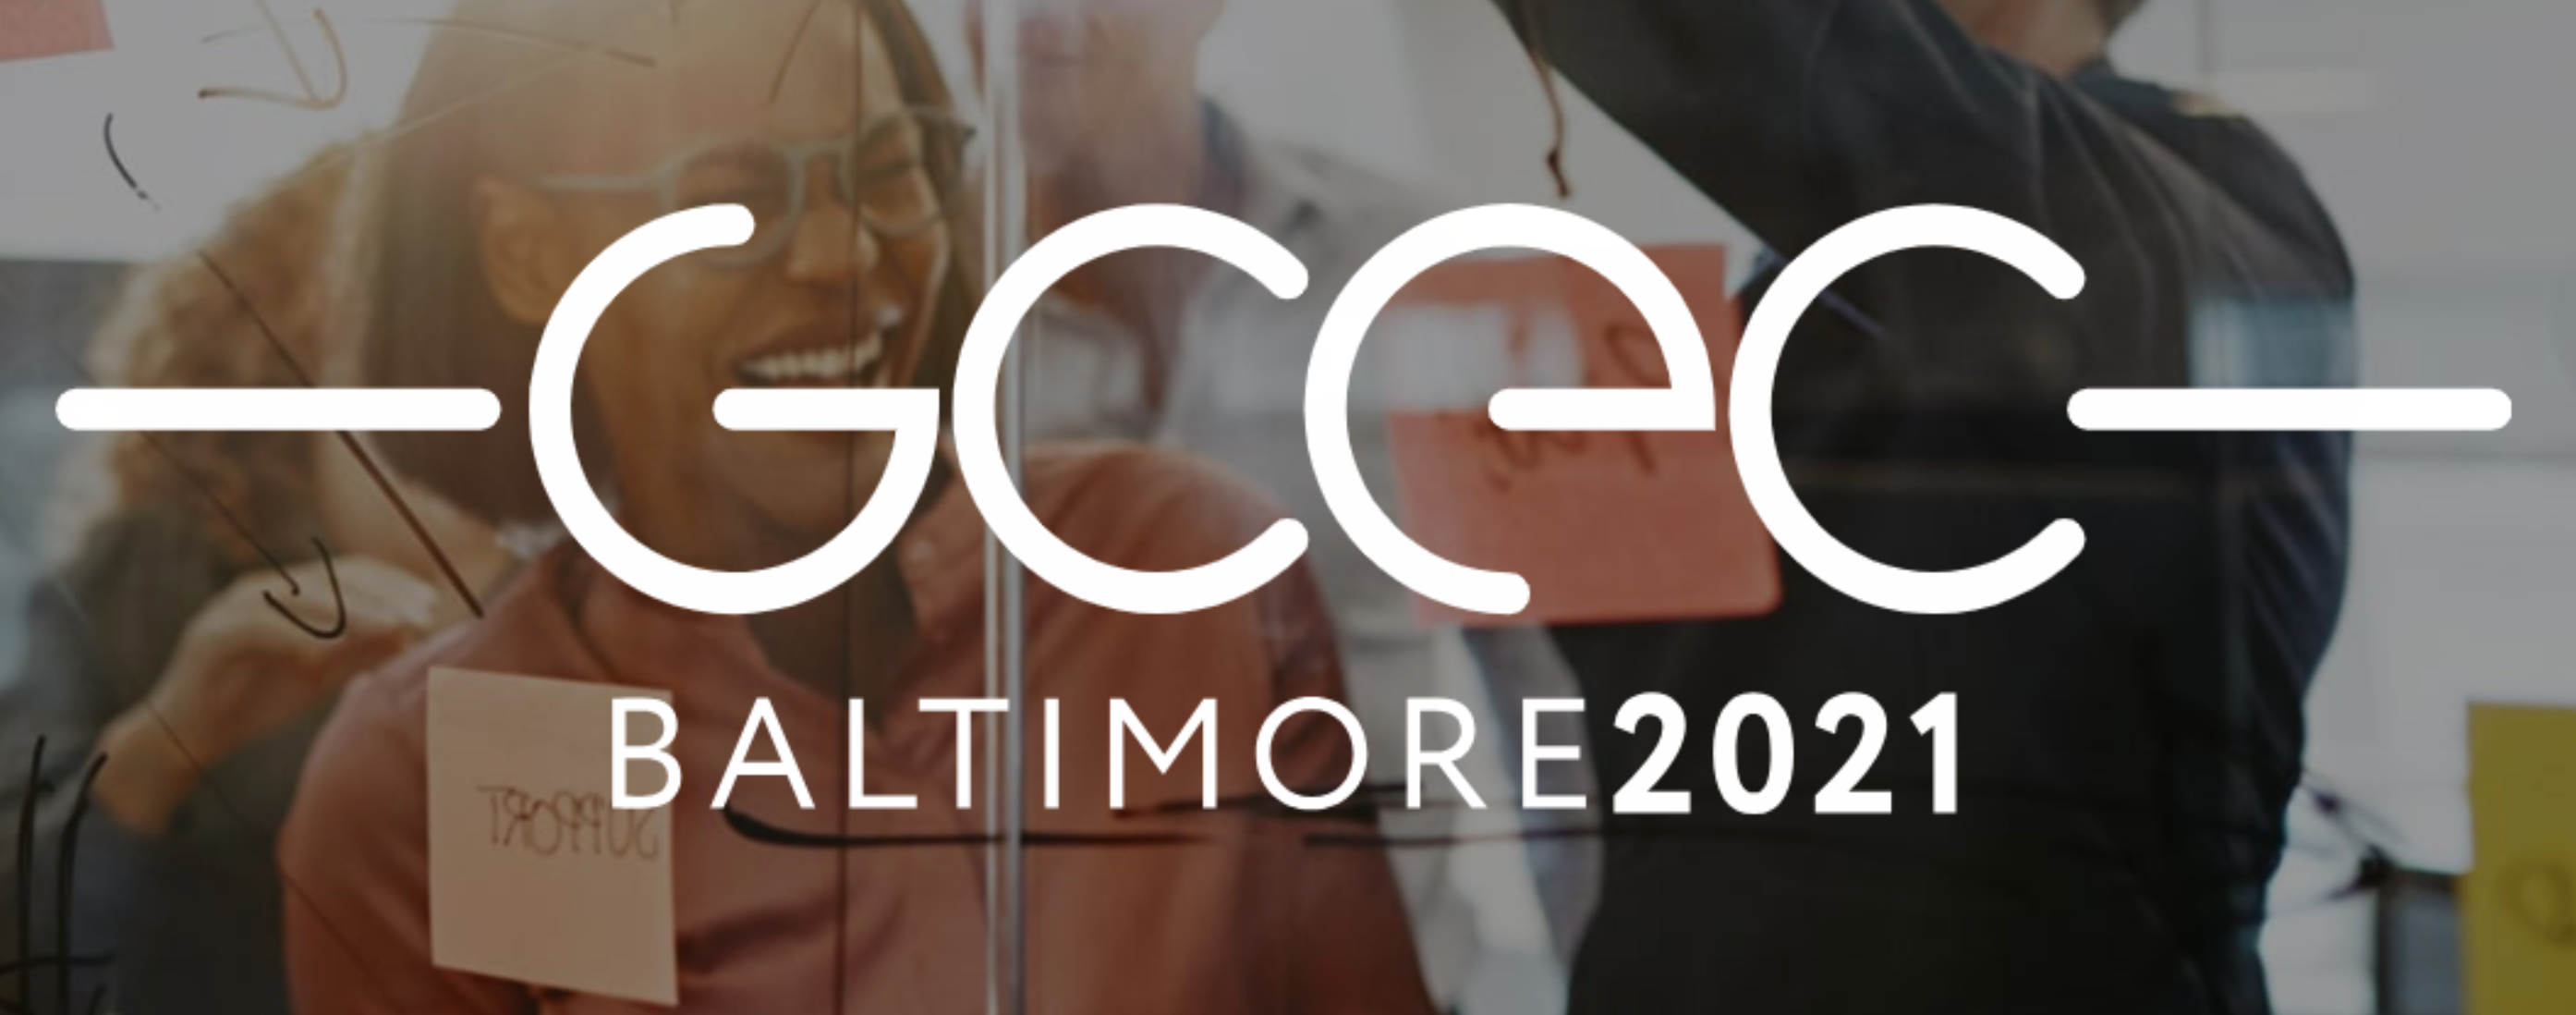 GCEC Baltimore 2021